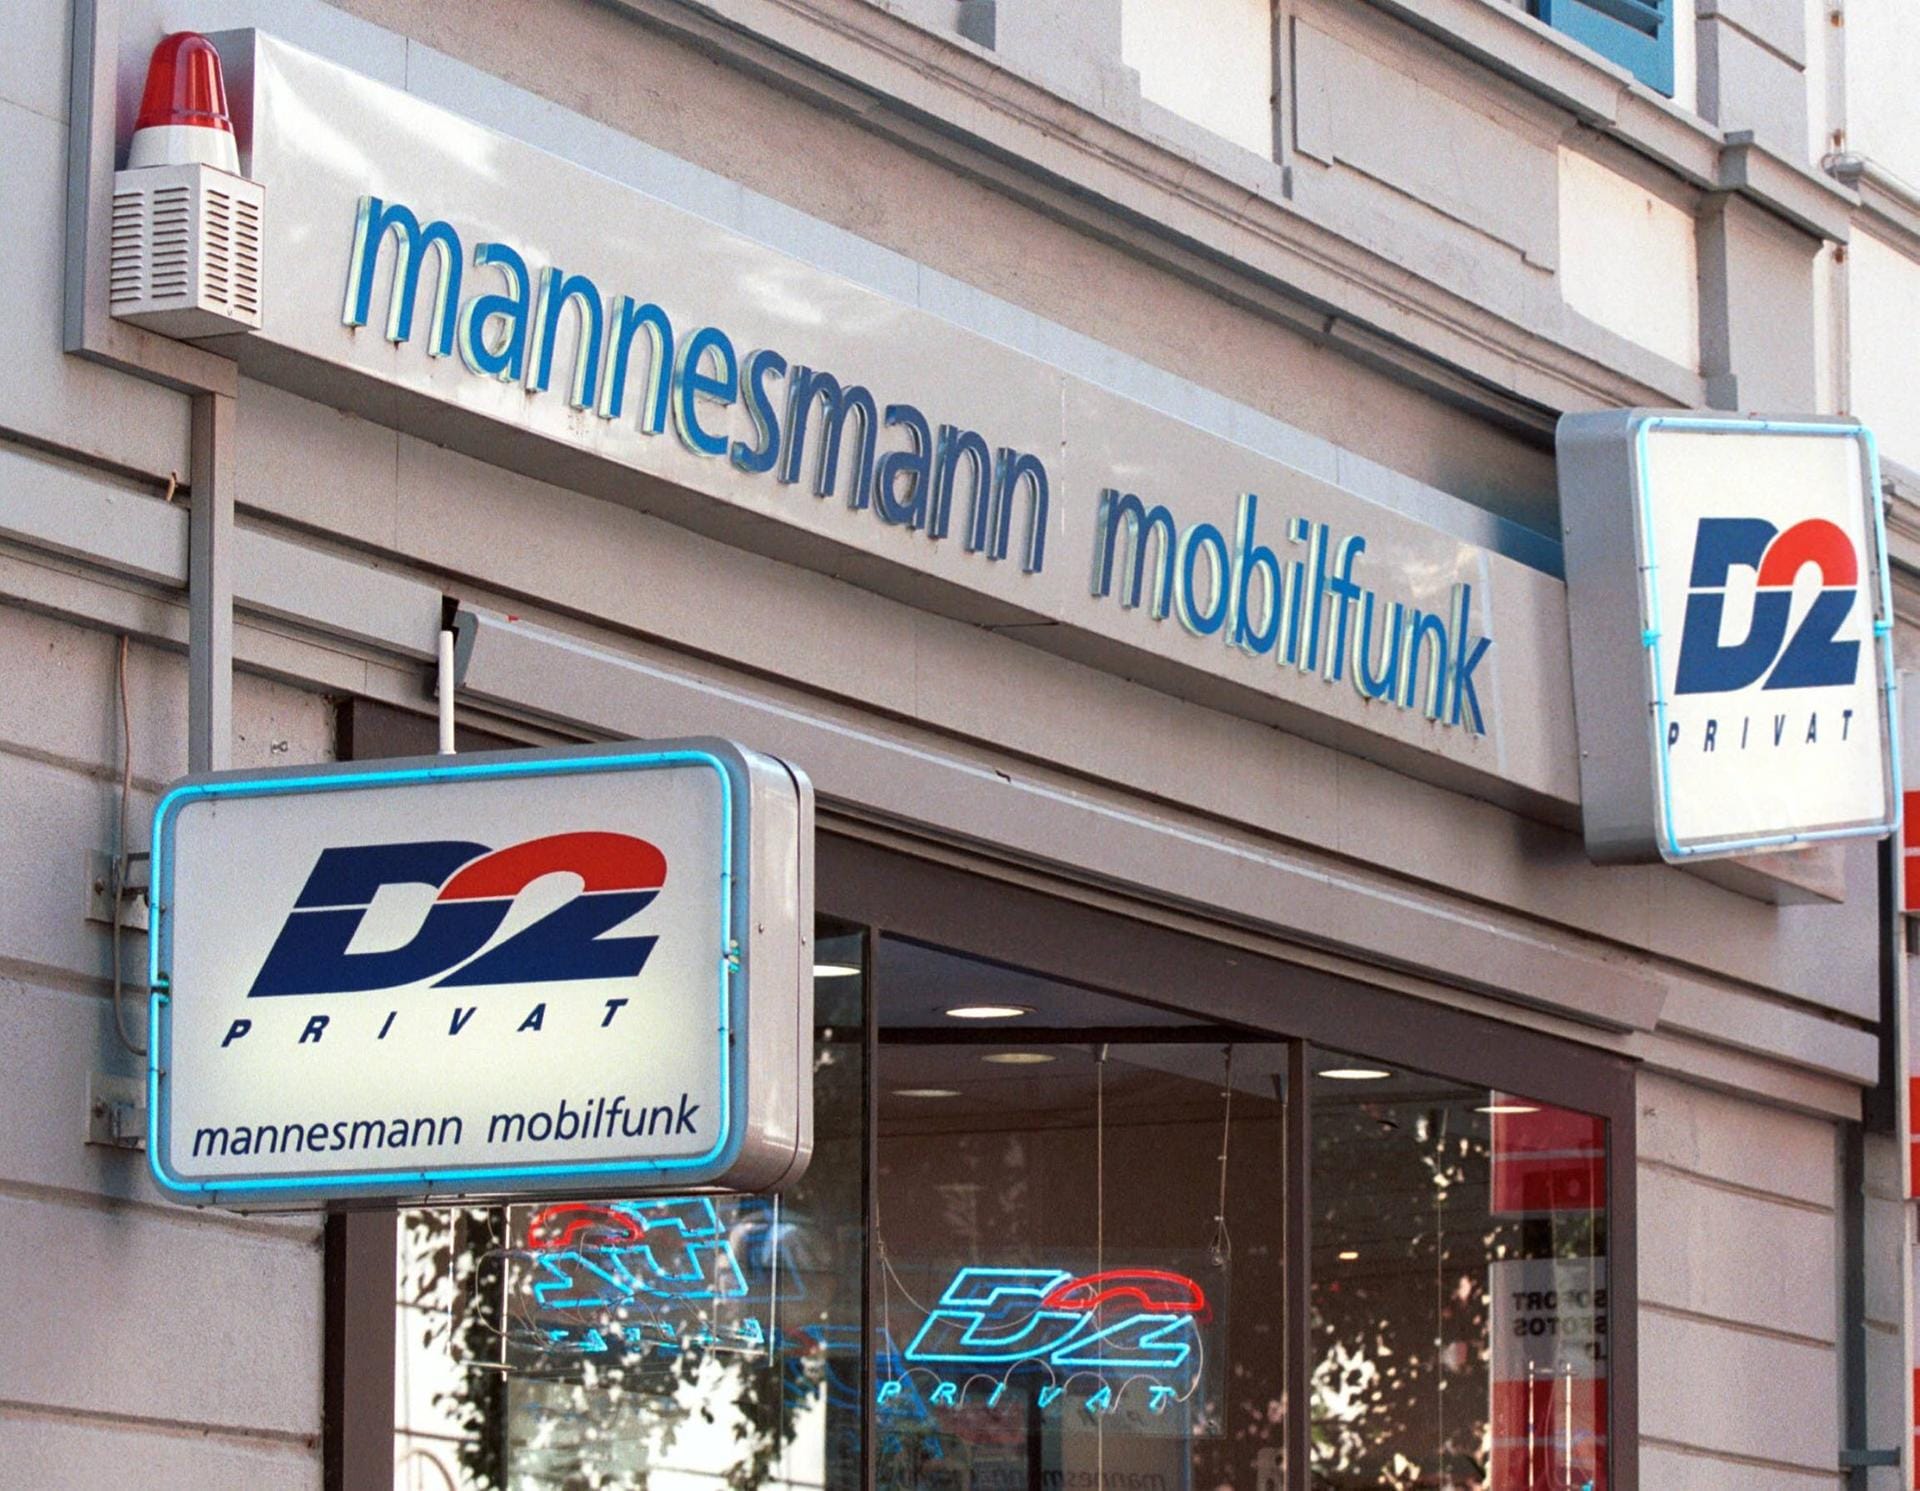 Mannesmann-Mobilfunkladen (Archivbild): Im Jahre 2000 wurde Mannesmann vom Konkurrenten Vodafone im Zuge einer feindlichen Übernahme gekauft – für 190 Milliarden Euro, der teuersten Übernahme der Welt. Die Mannesmann AG wurde in der Folge zerschlagen, das Mannesmann-Hochhaus in Düsseldorf ziert ein Vodafone-Logo.